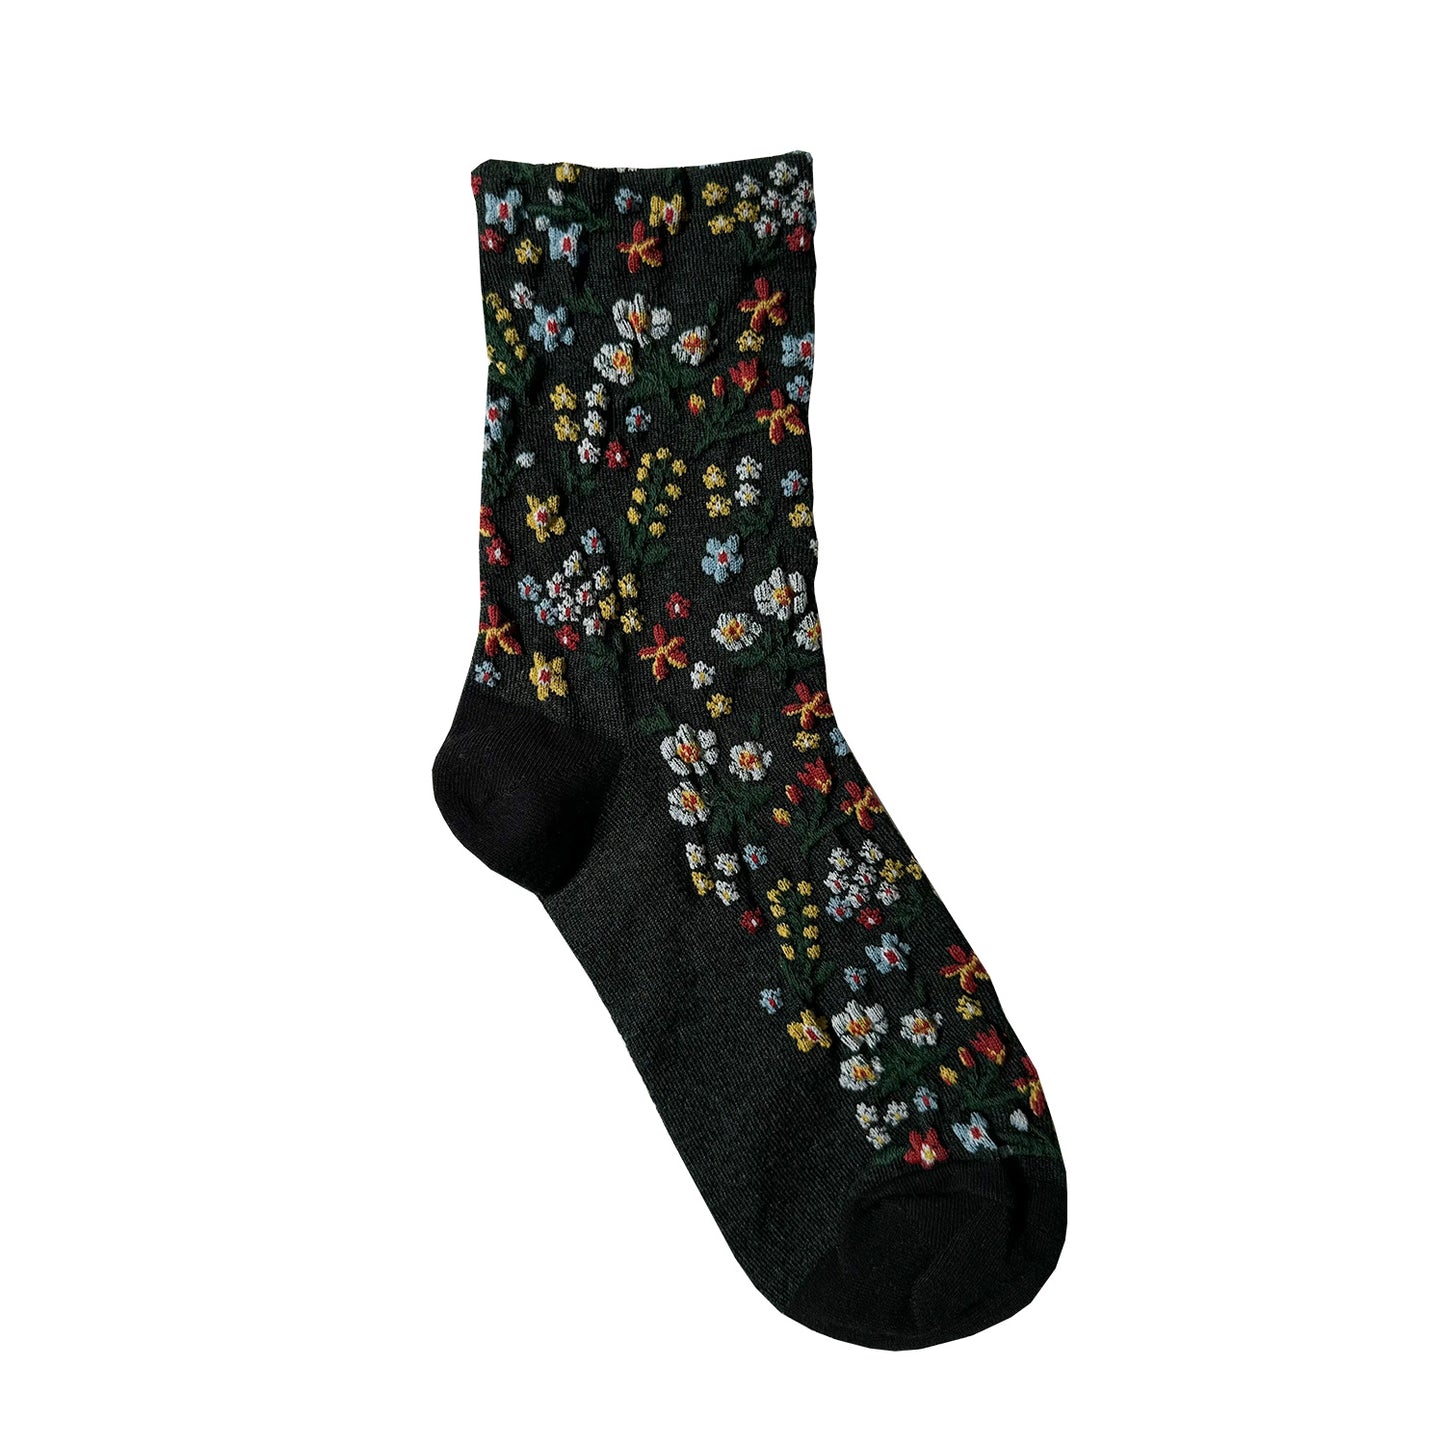 Women's Crew Harga Garden Flower Socks